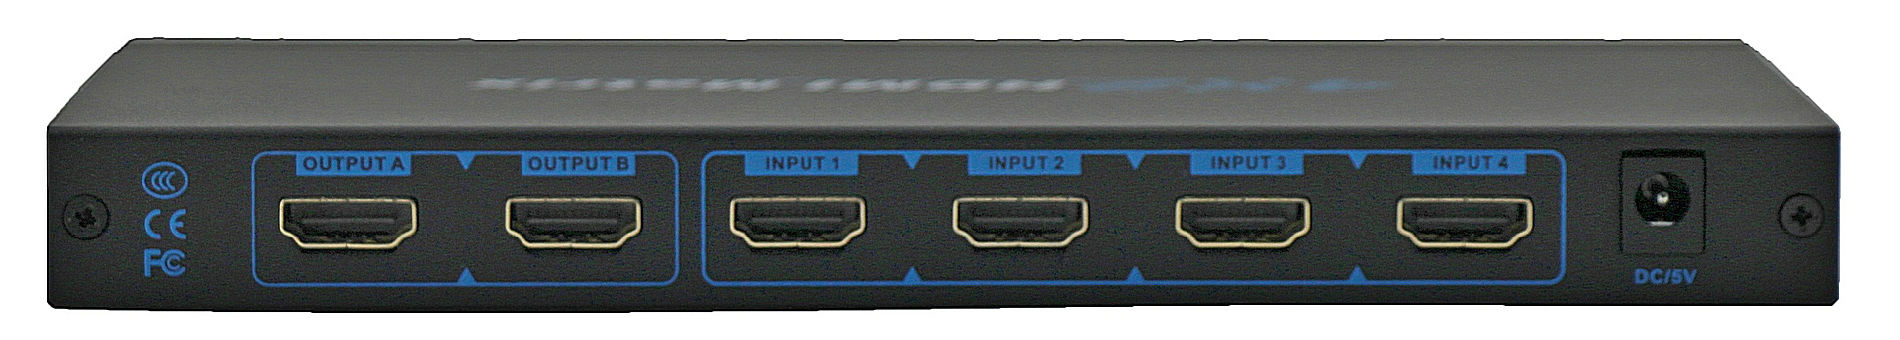 HDMI 04-02 数字矩阵